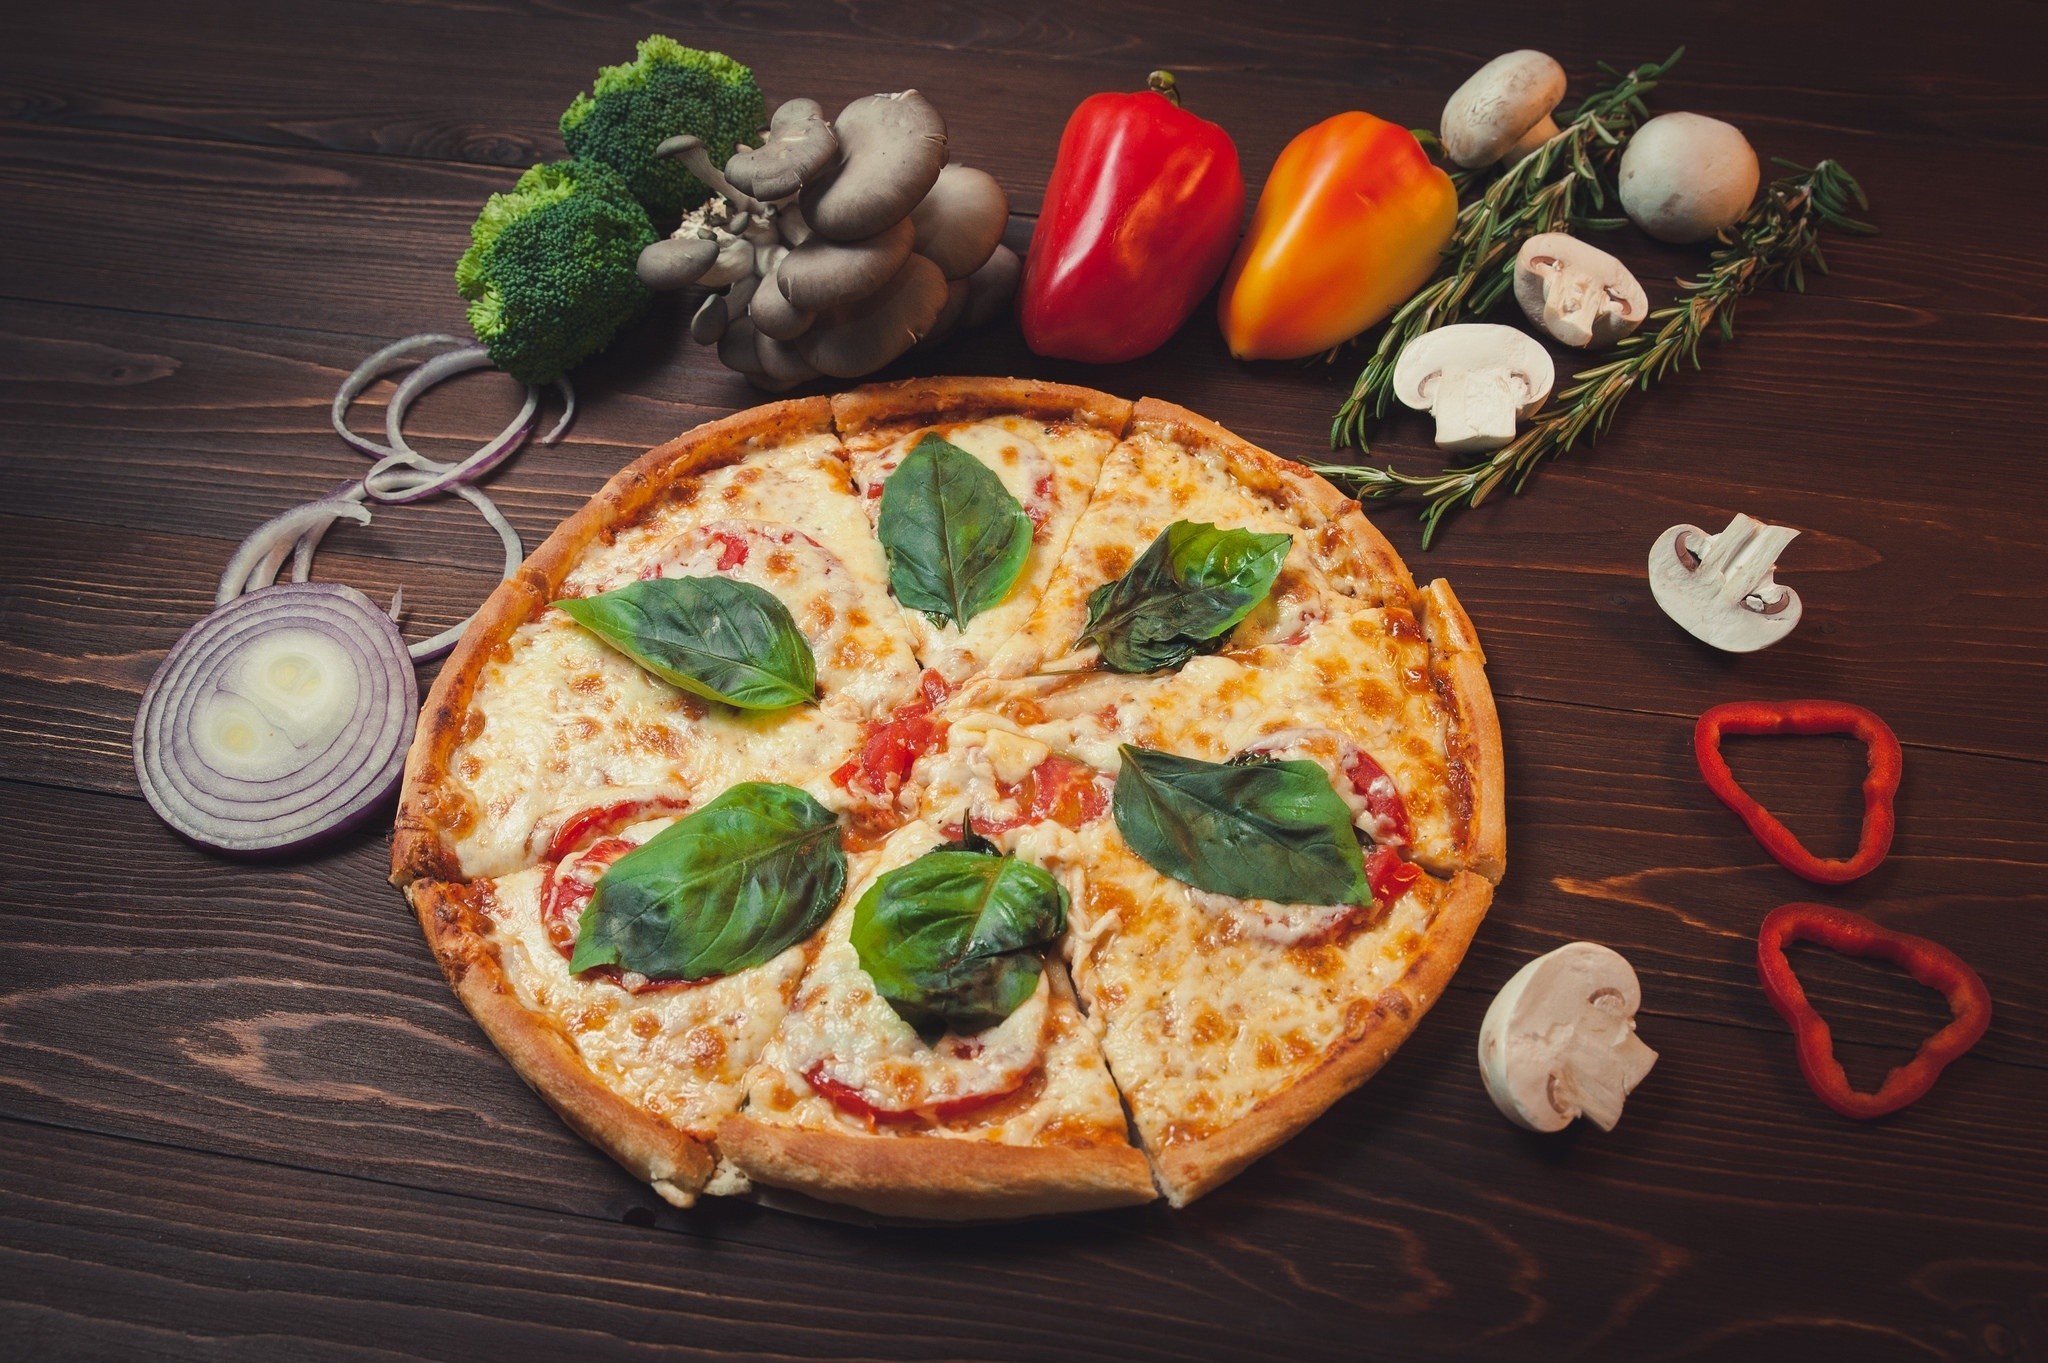 Картинка: Пицца, красный перец, грибы, лук, специи, зелень